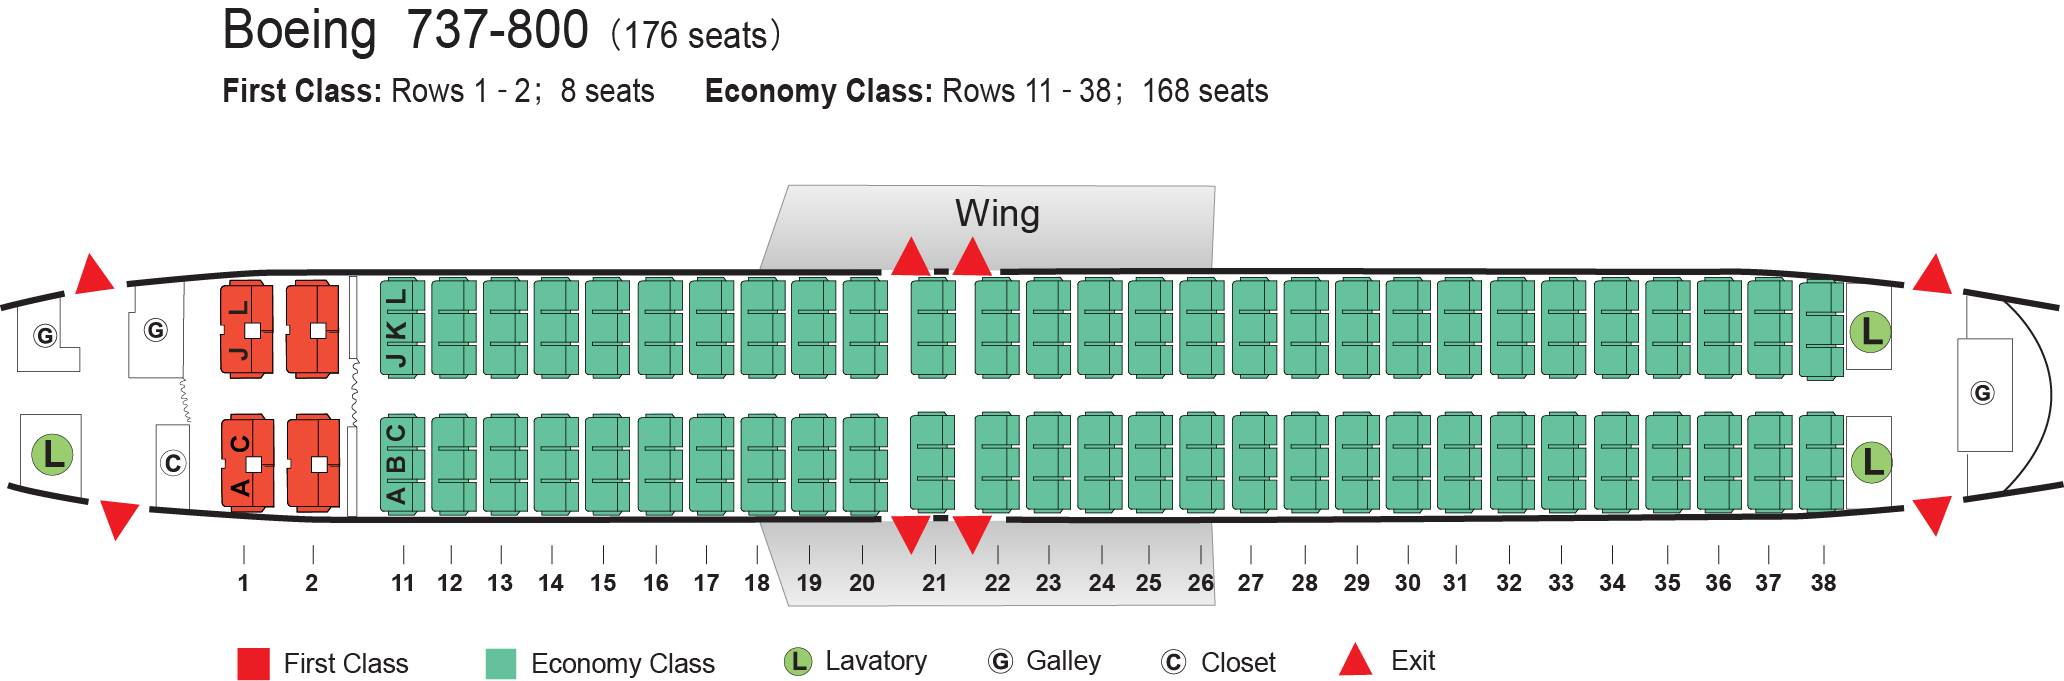 План салона Боинг 737-800